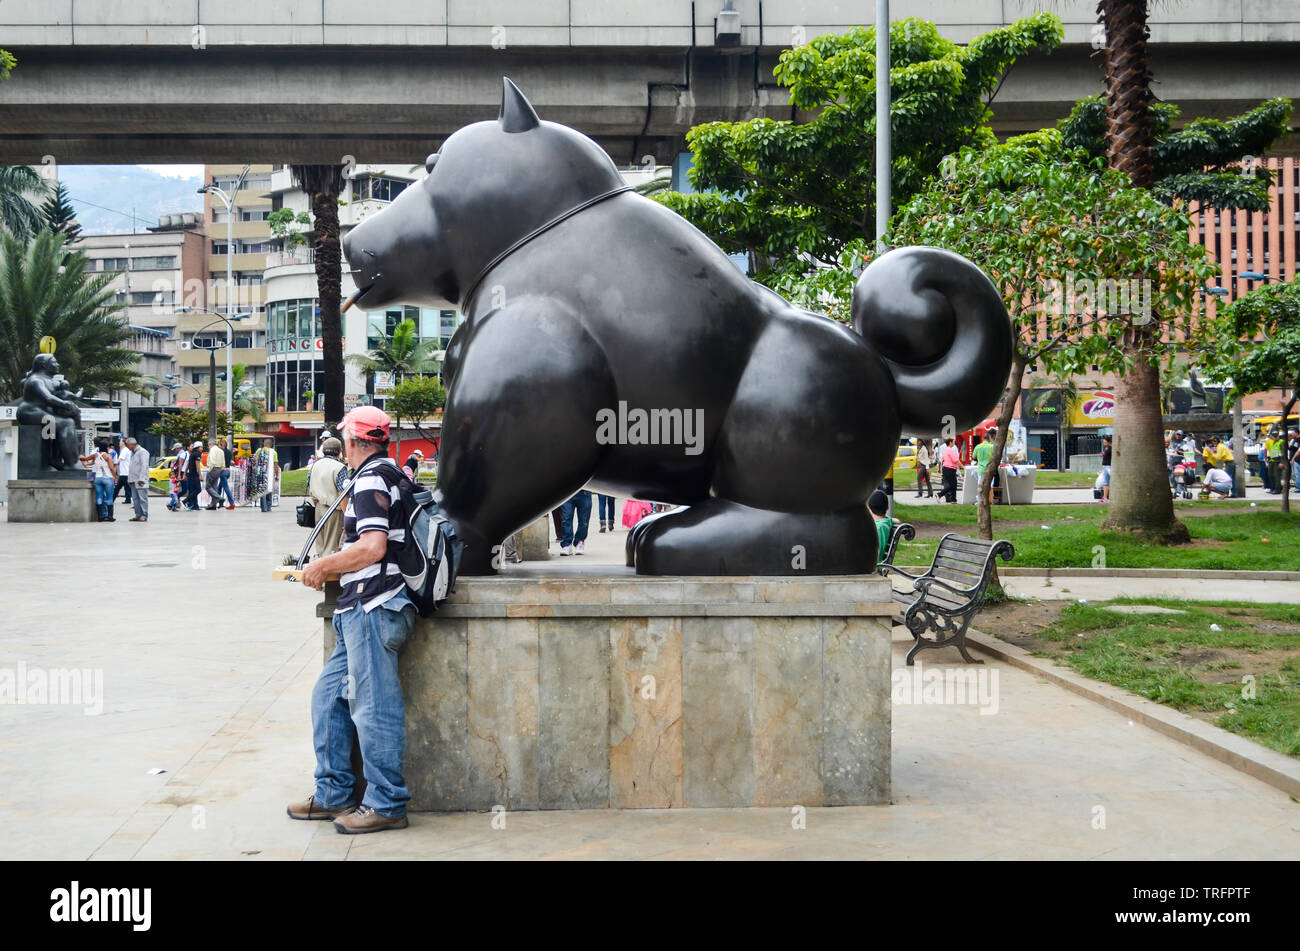 La famosa escultura de gato por el mundialmente famoso artista colombiano Fernando Botero, ubicado en la Plaza de Botero, uno de los principales atractivos turísticos de Medellín Foto de stock